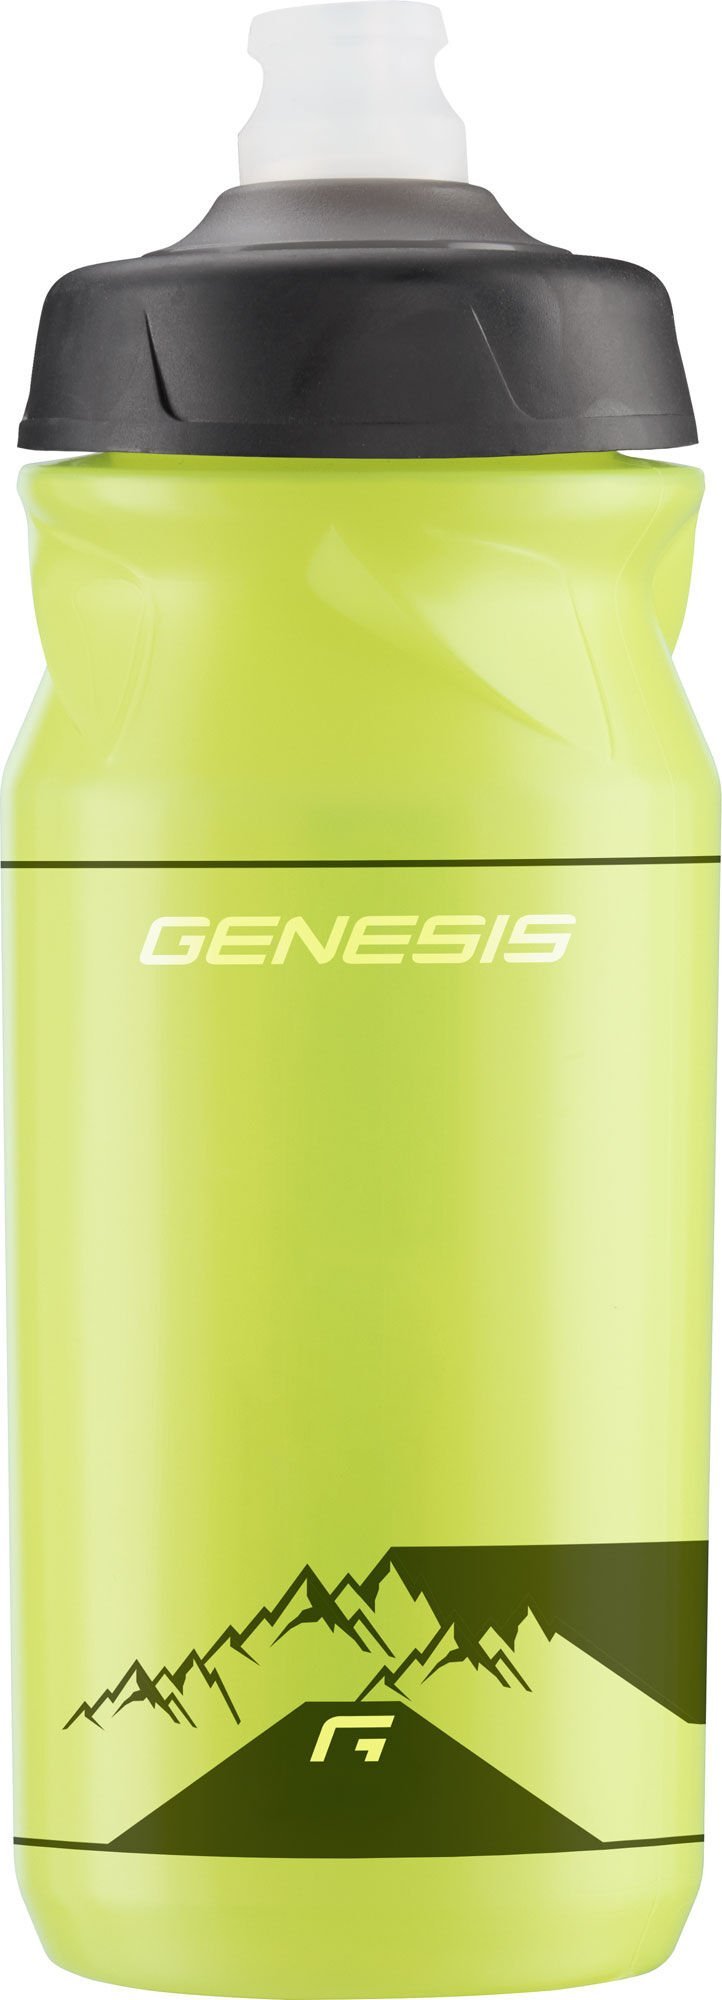 Genesis Promo Pro Bottle